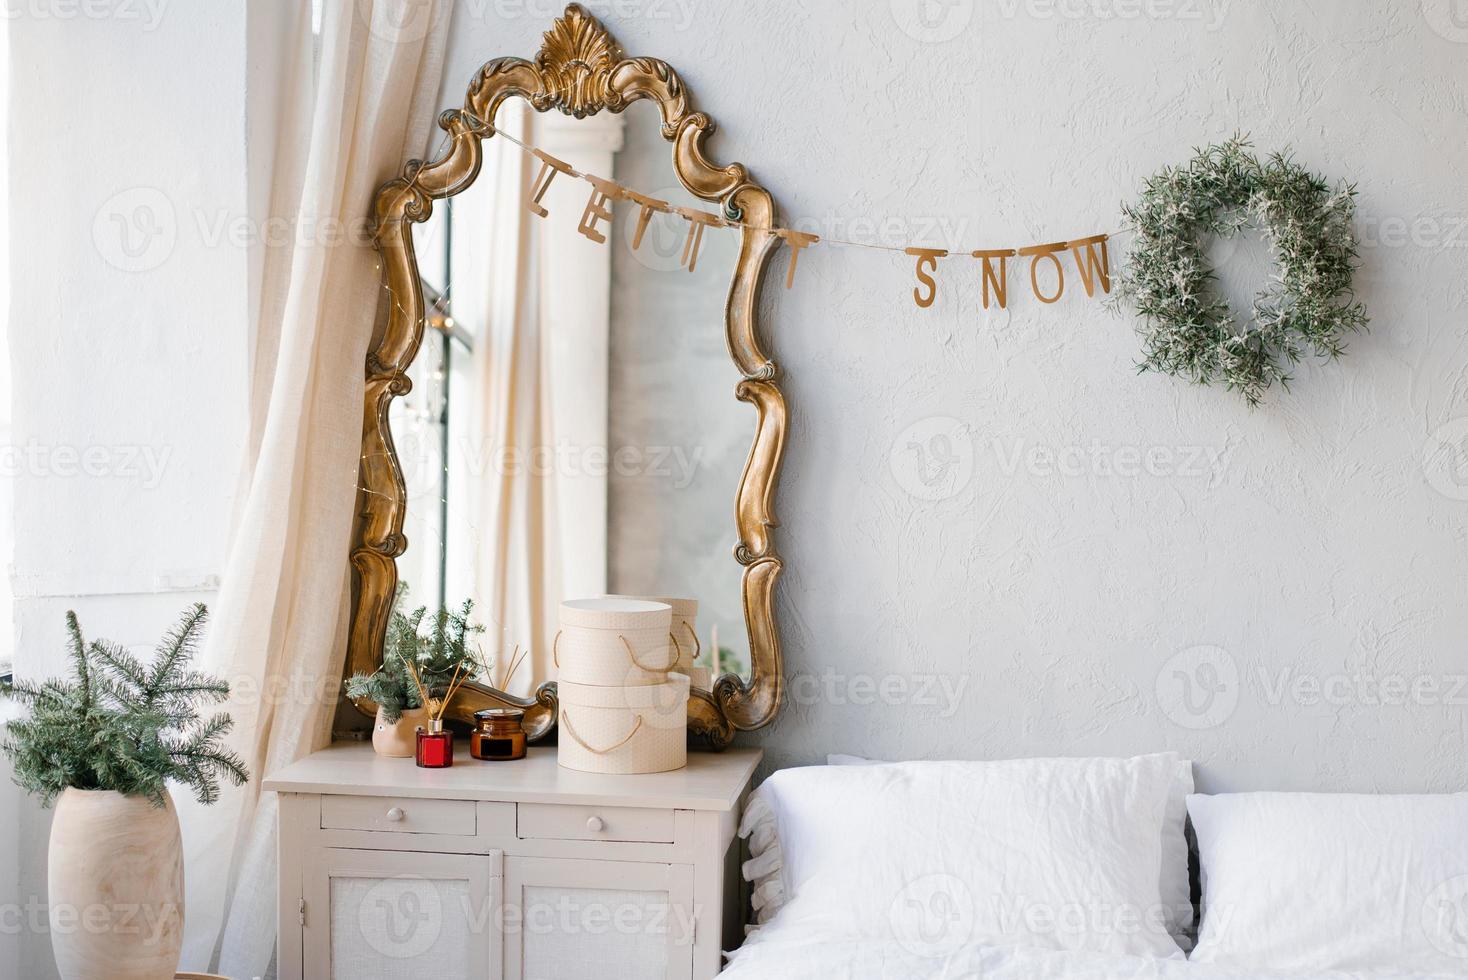 le intérieur de une chambre décoré pour Noël et Nouveau année dans une scandinave ou ancien style. une miroir plus de le la commode, épicéa branches dans une vase, une Noël couronne plus de le lit photo